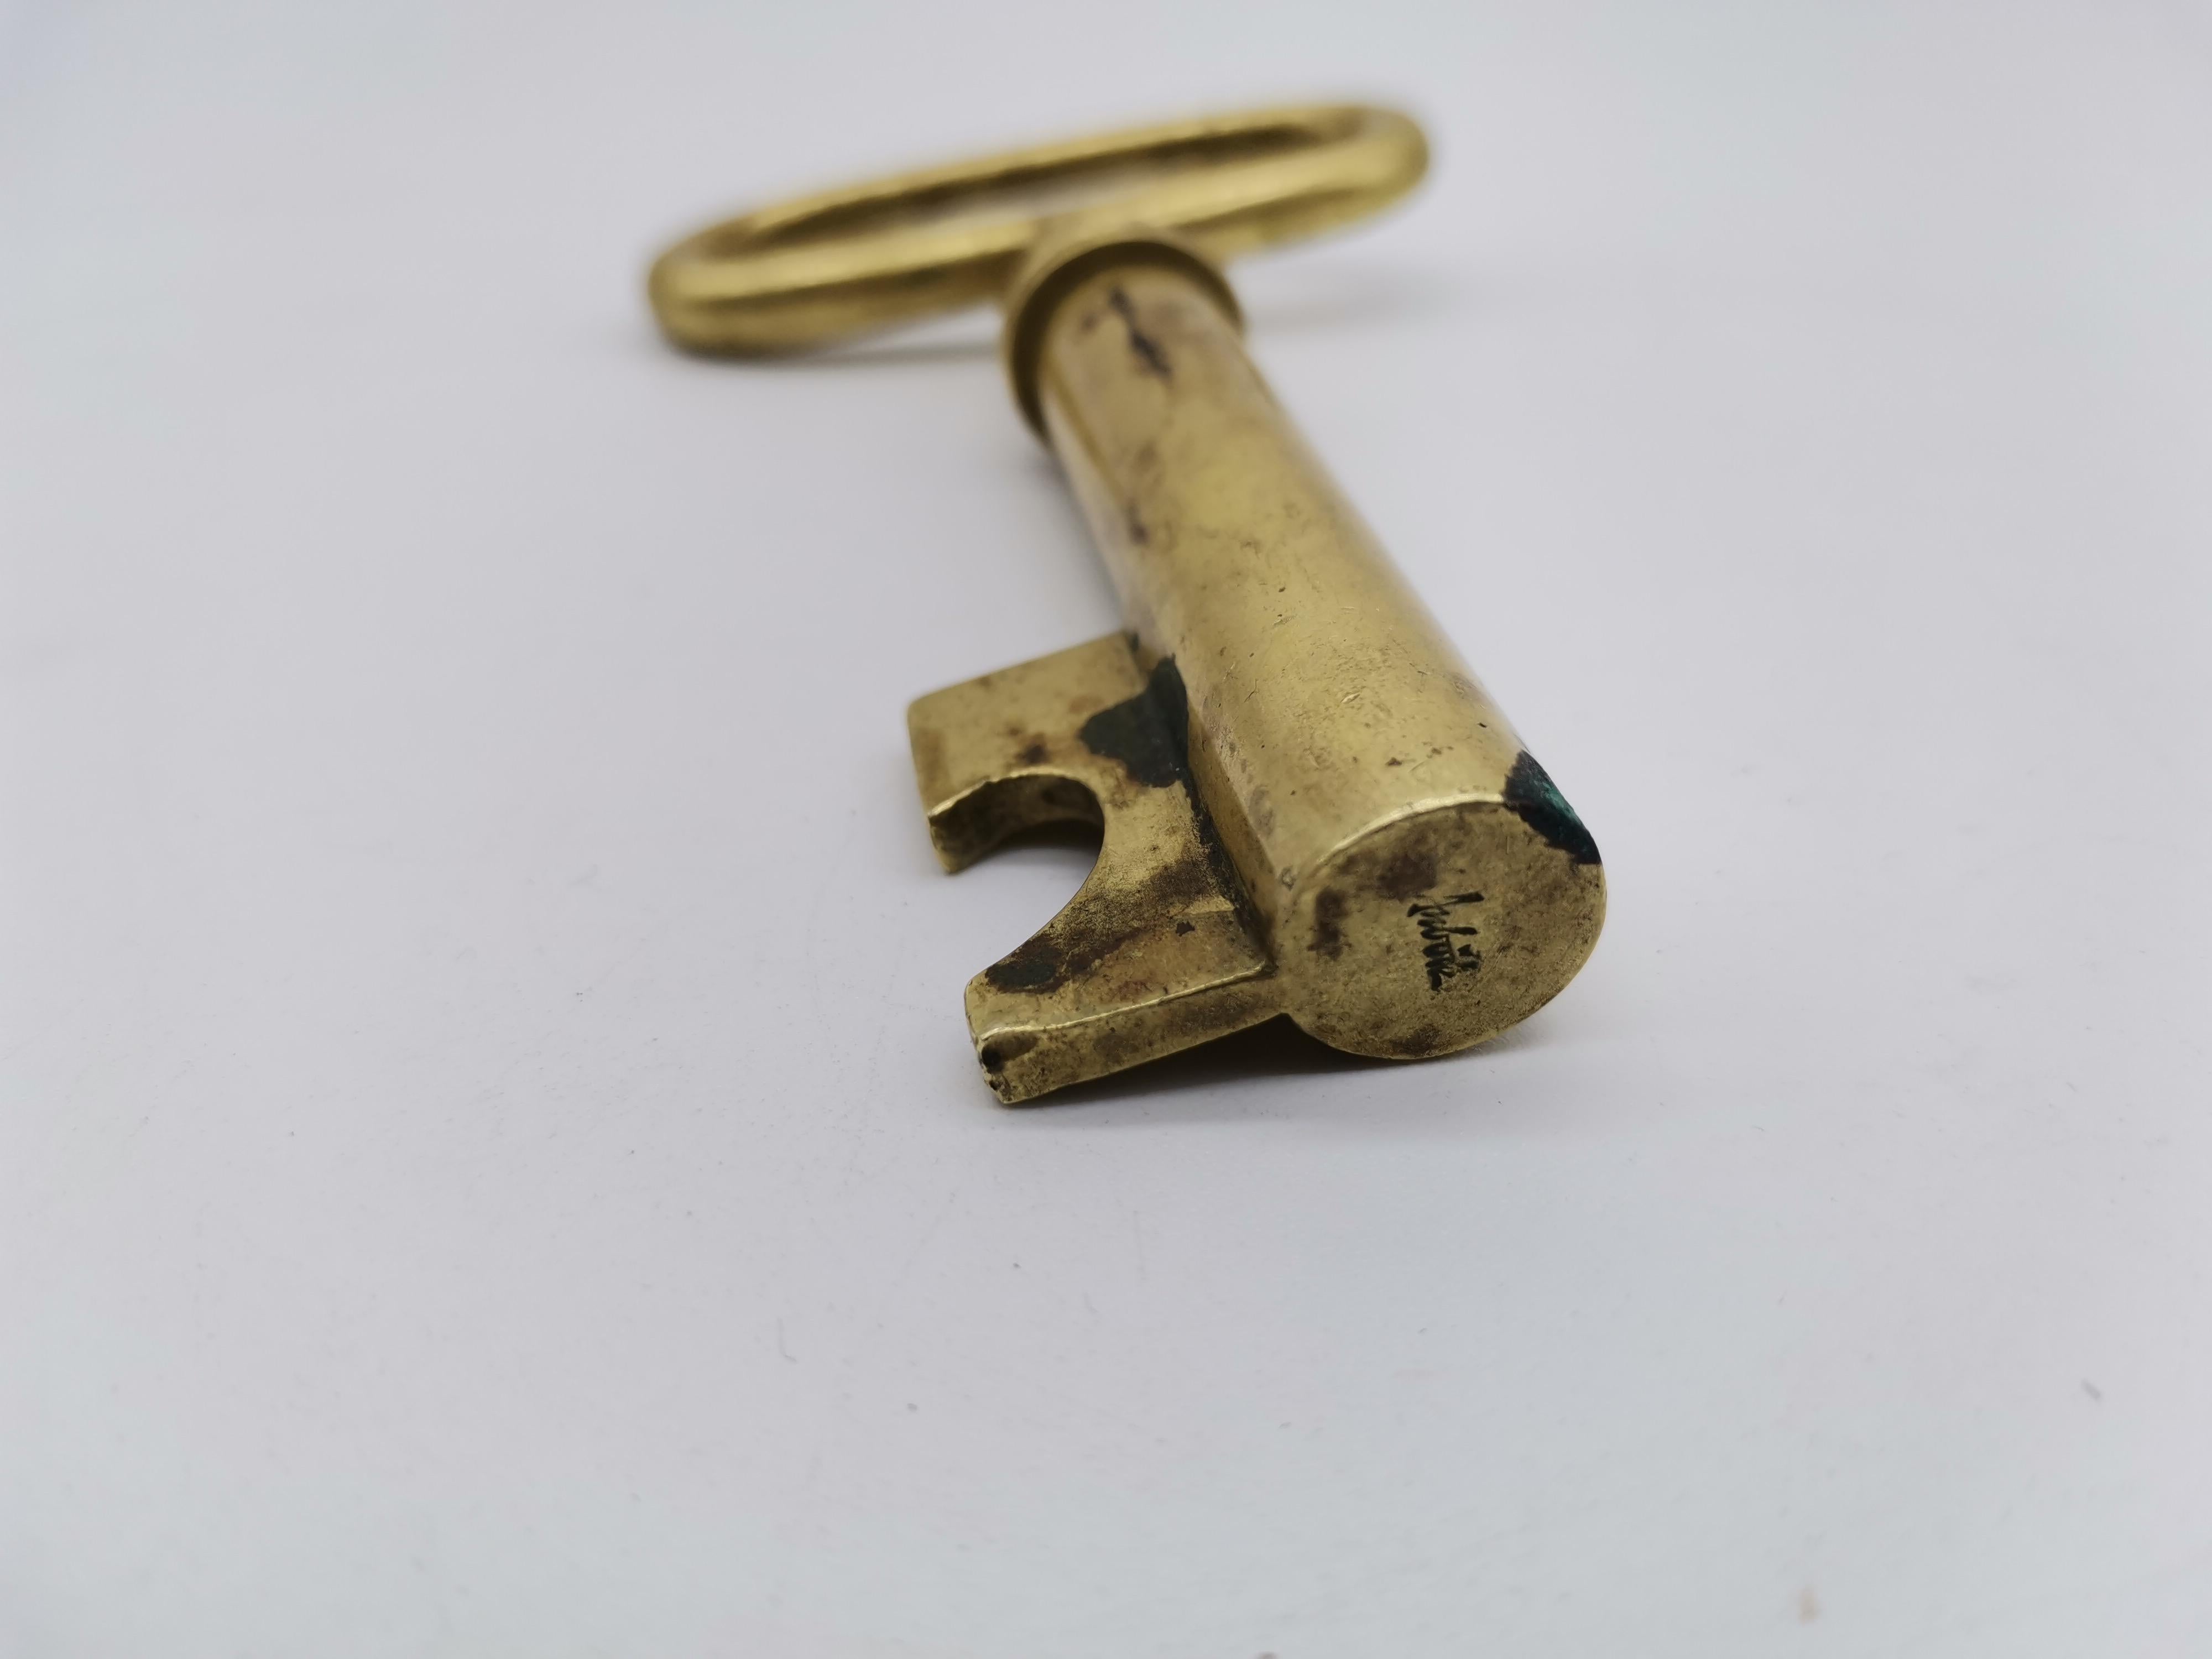 A cork screw in shape of a key by Carl Auböck.